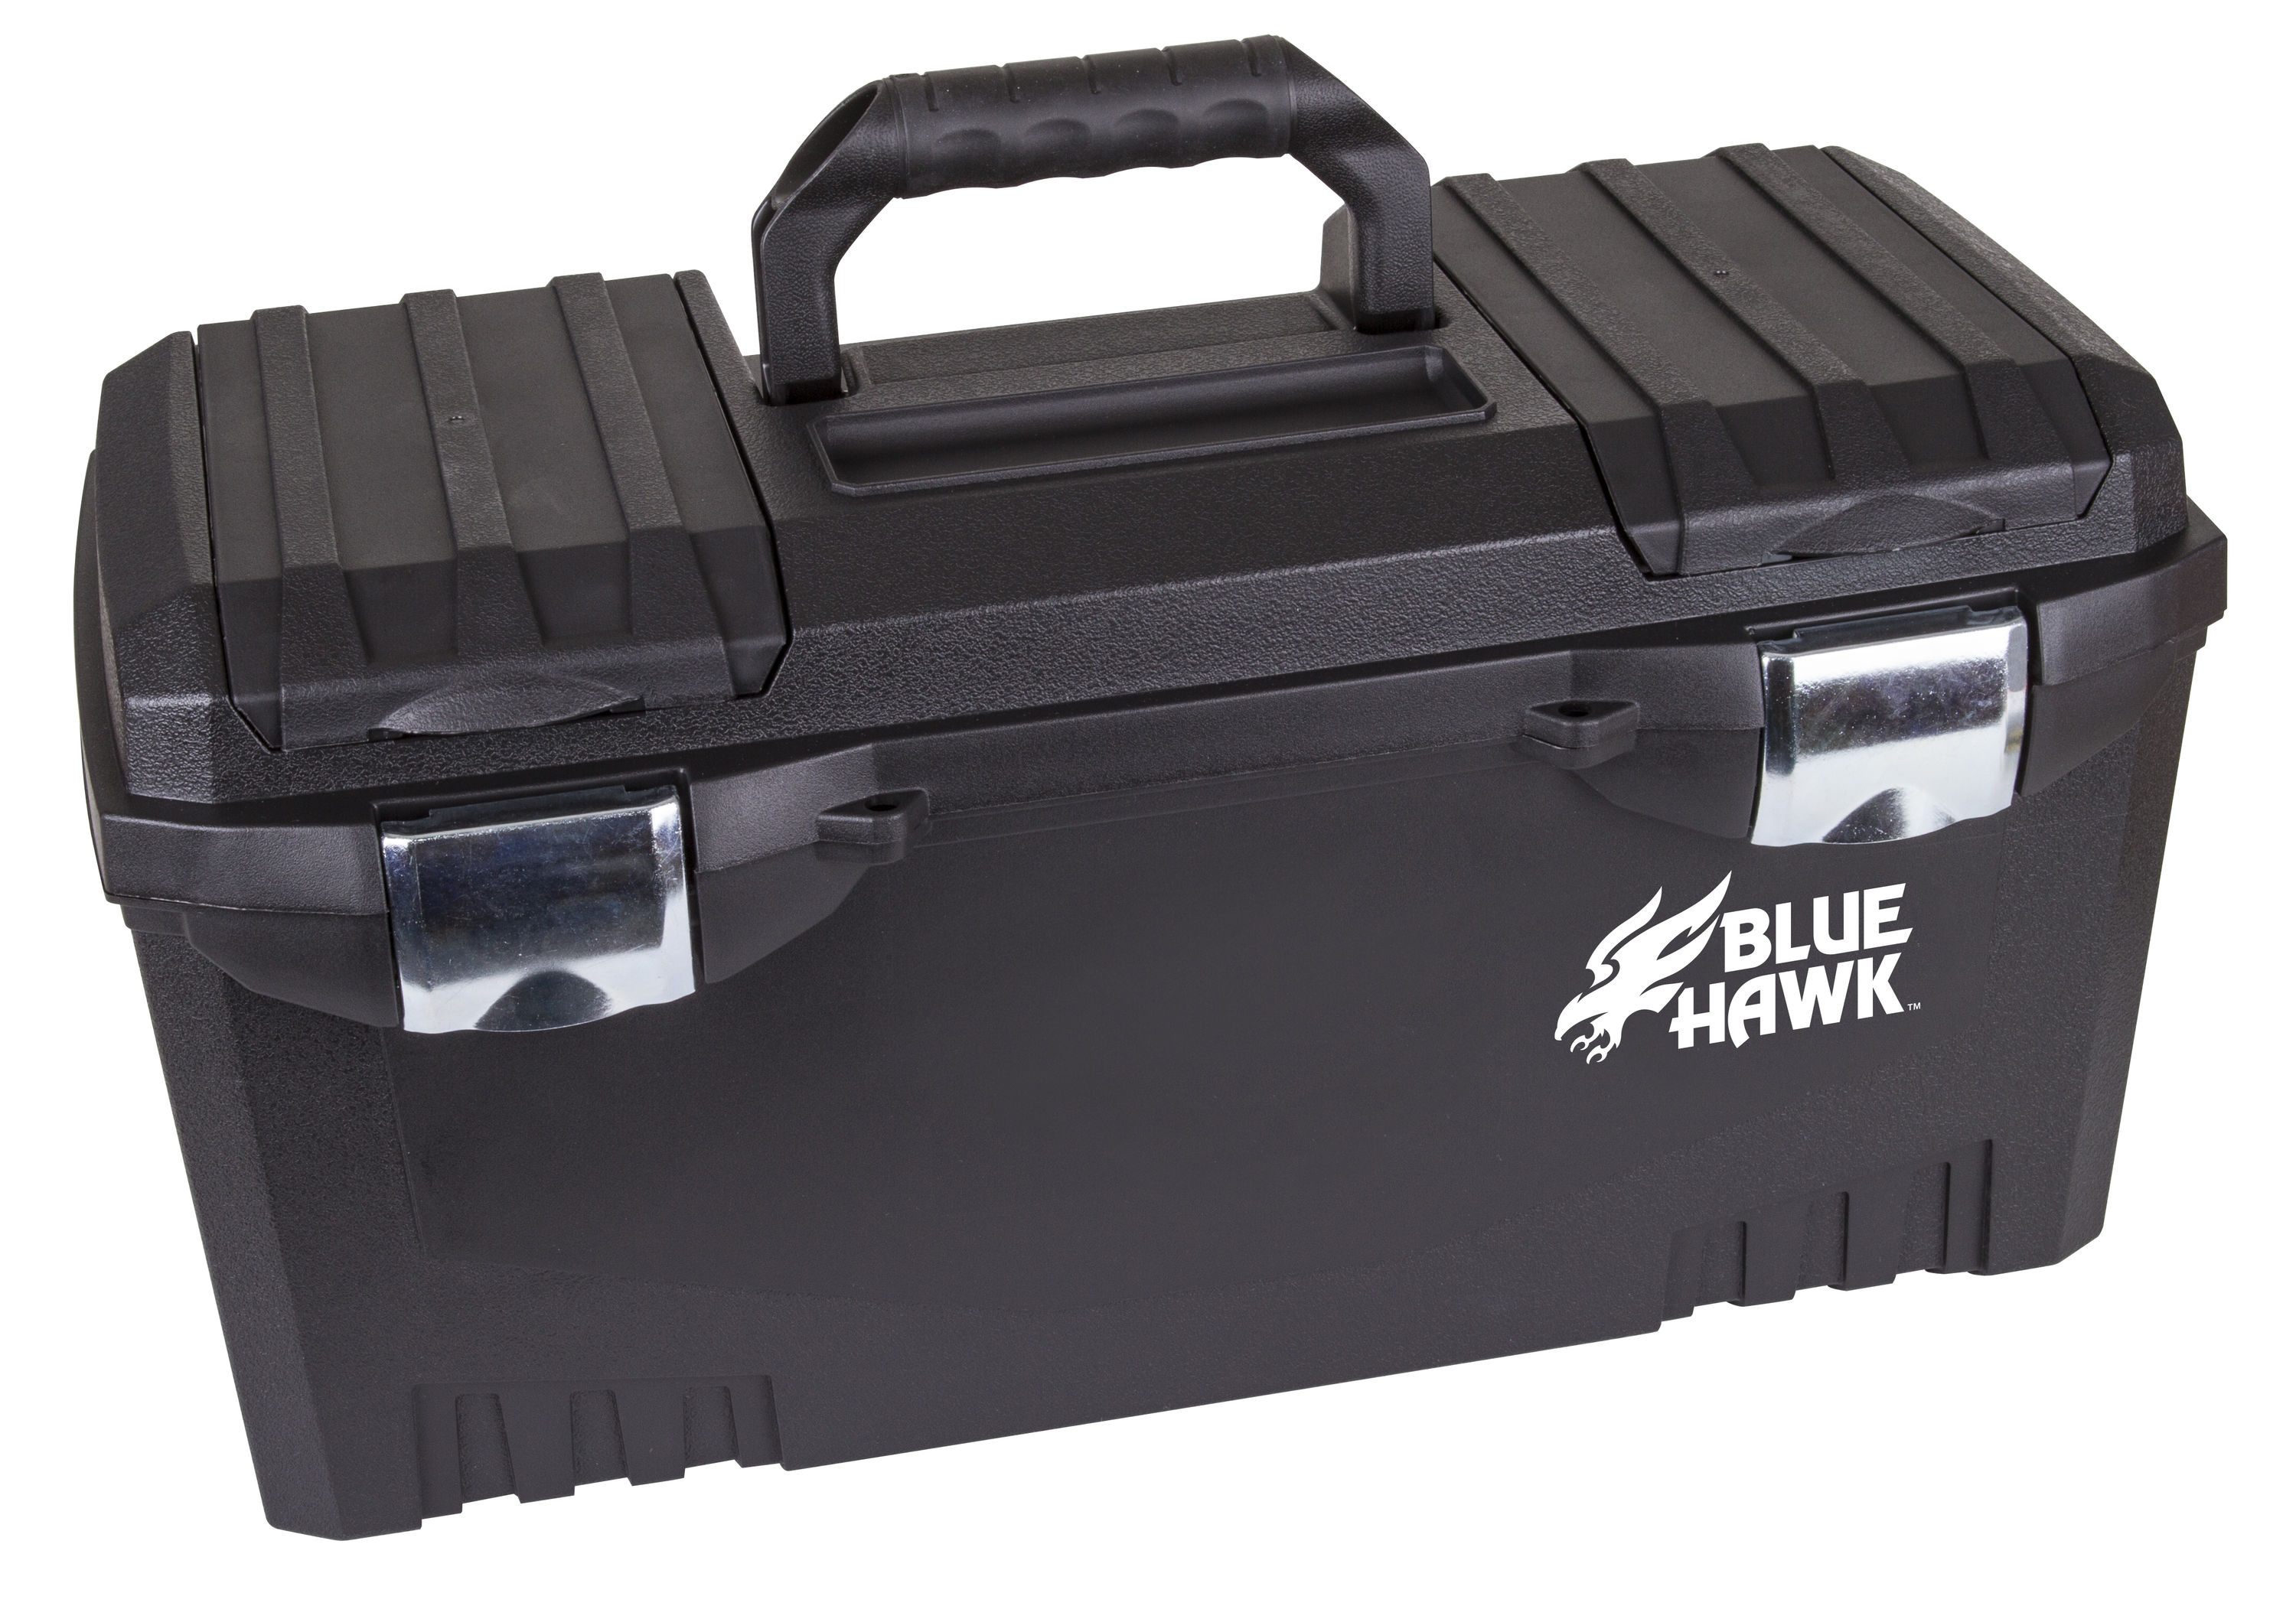 Blue Hawk 20-in Black Plastic Lockable Tool Box at